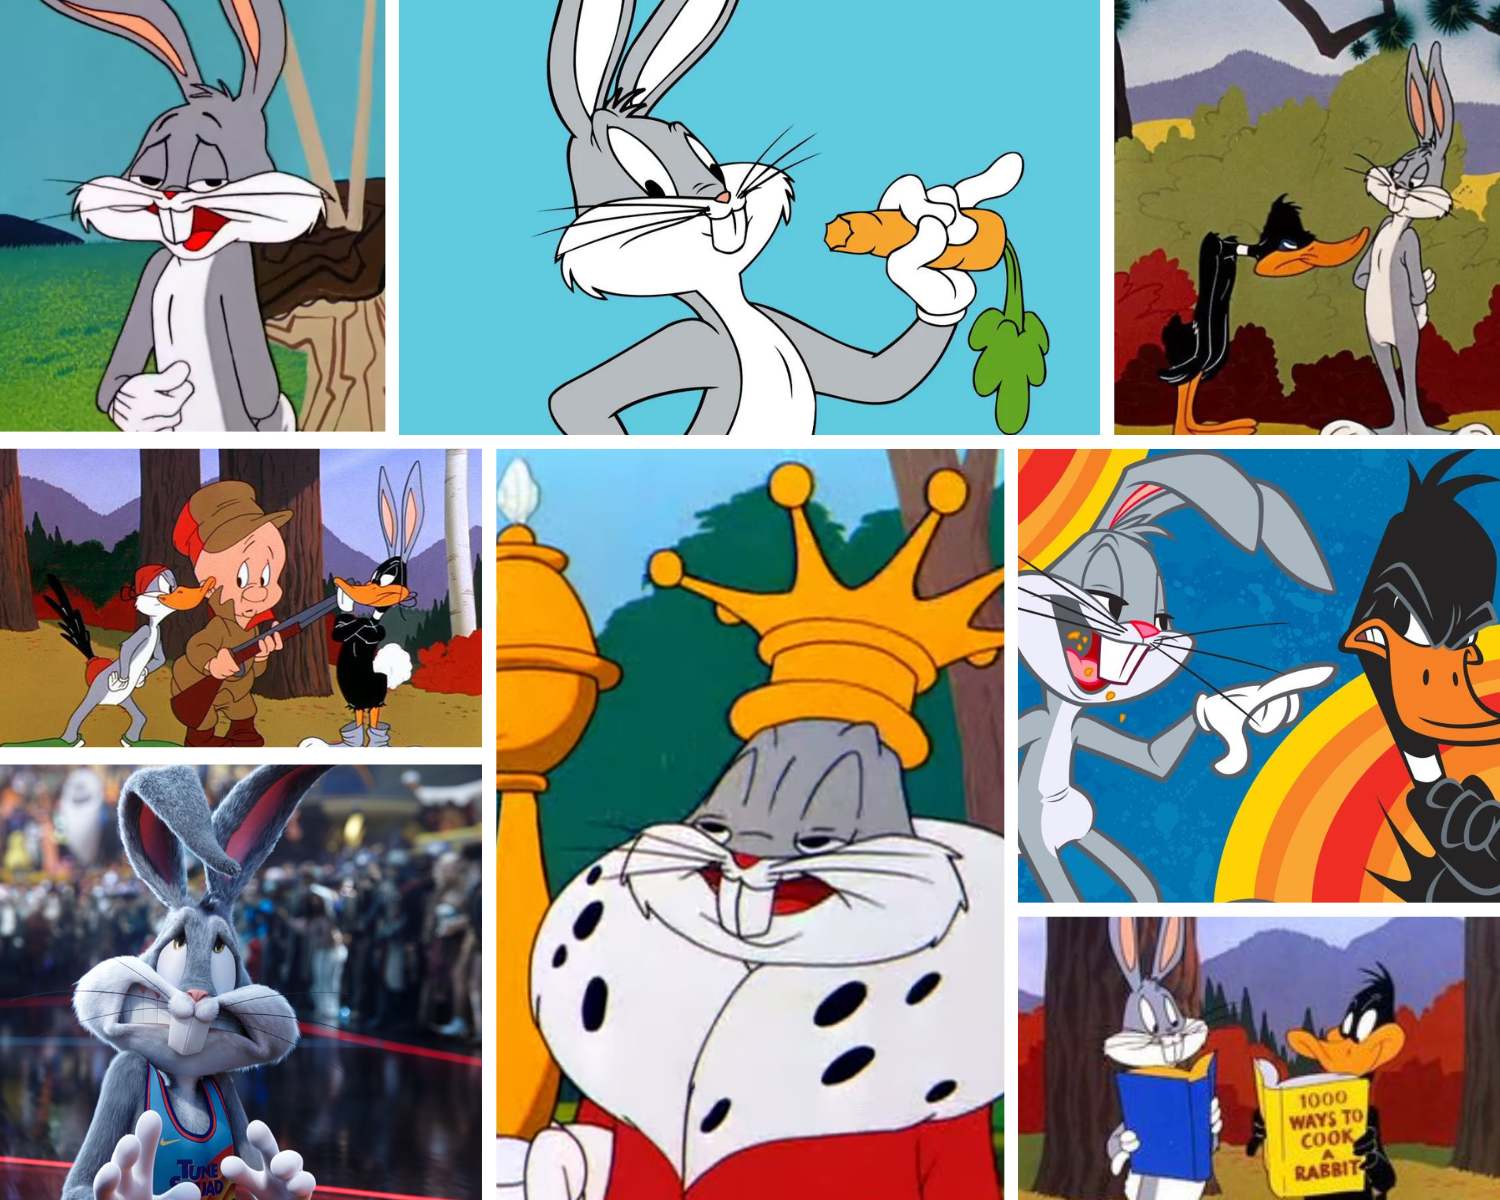 Cartoons & Anime - bugs bunny - Anime and Cartoon GIFs, Memes and Videos. -  Anime | Cartoons | Anime Memes | Cartoon Memes | Cartoon Anime - Cheezburger